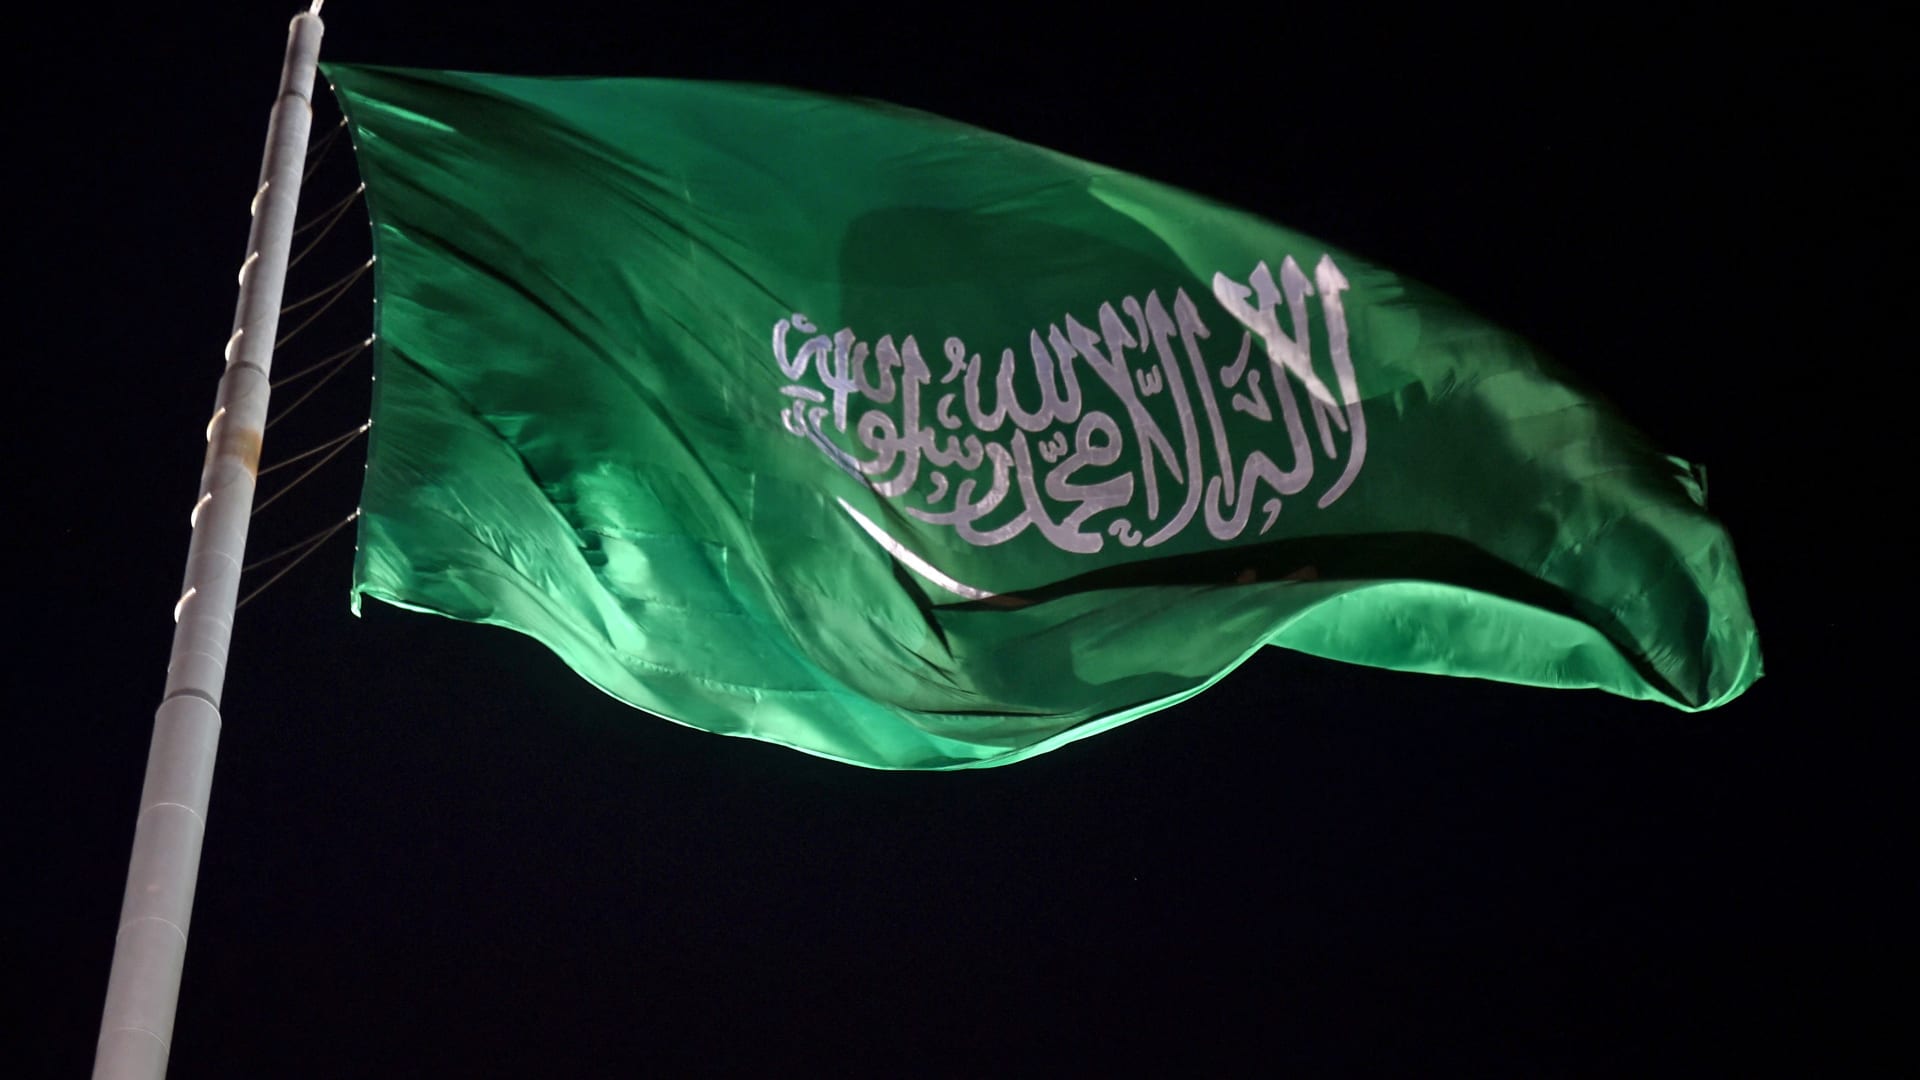 السعودية.. تنفيذ الإعدام في أردني الجنسية بتهمة تهريب الإمفيتامين المخدر